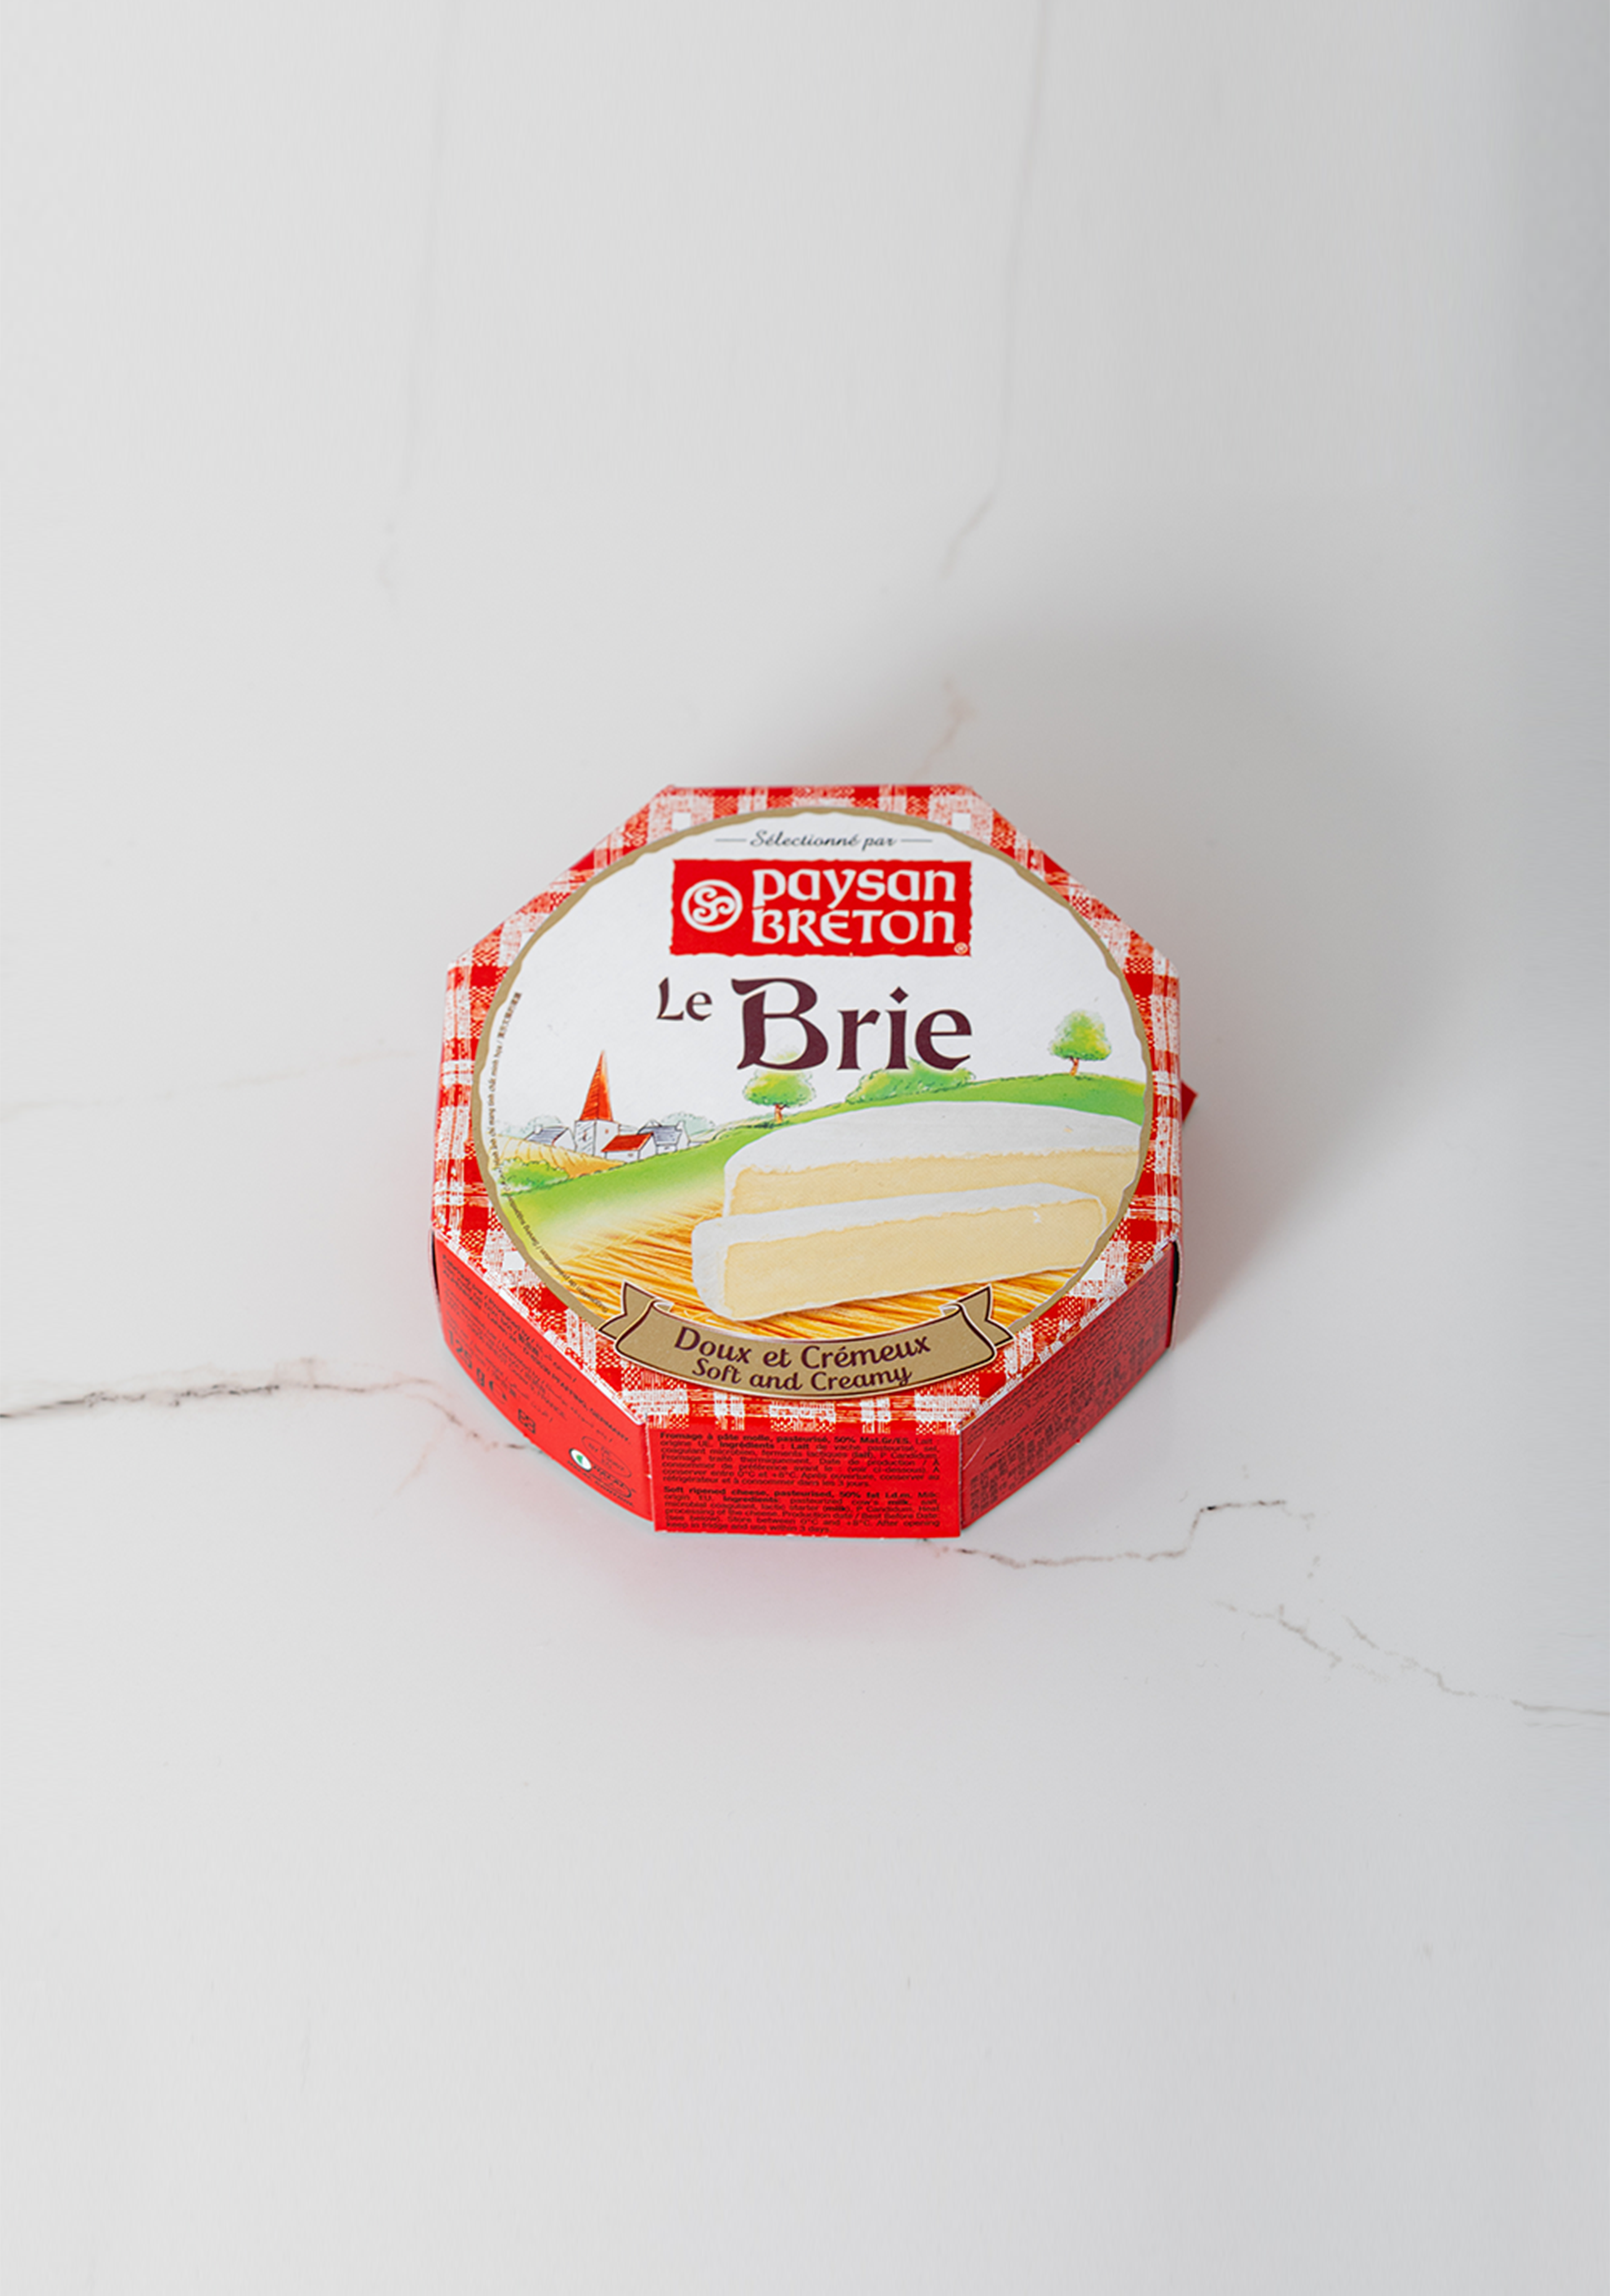 Paysan Breton Le Brie